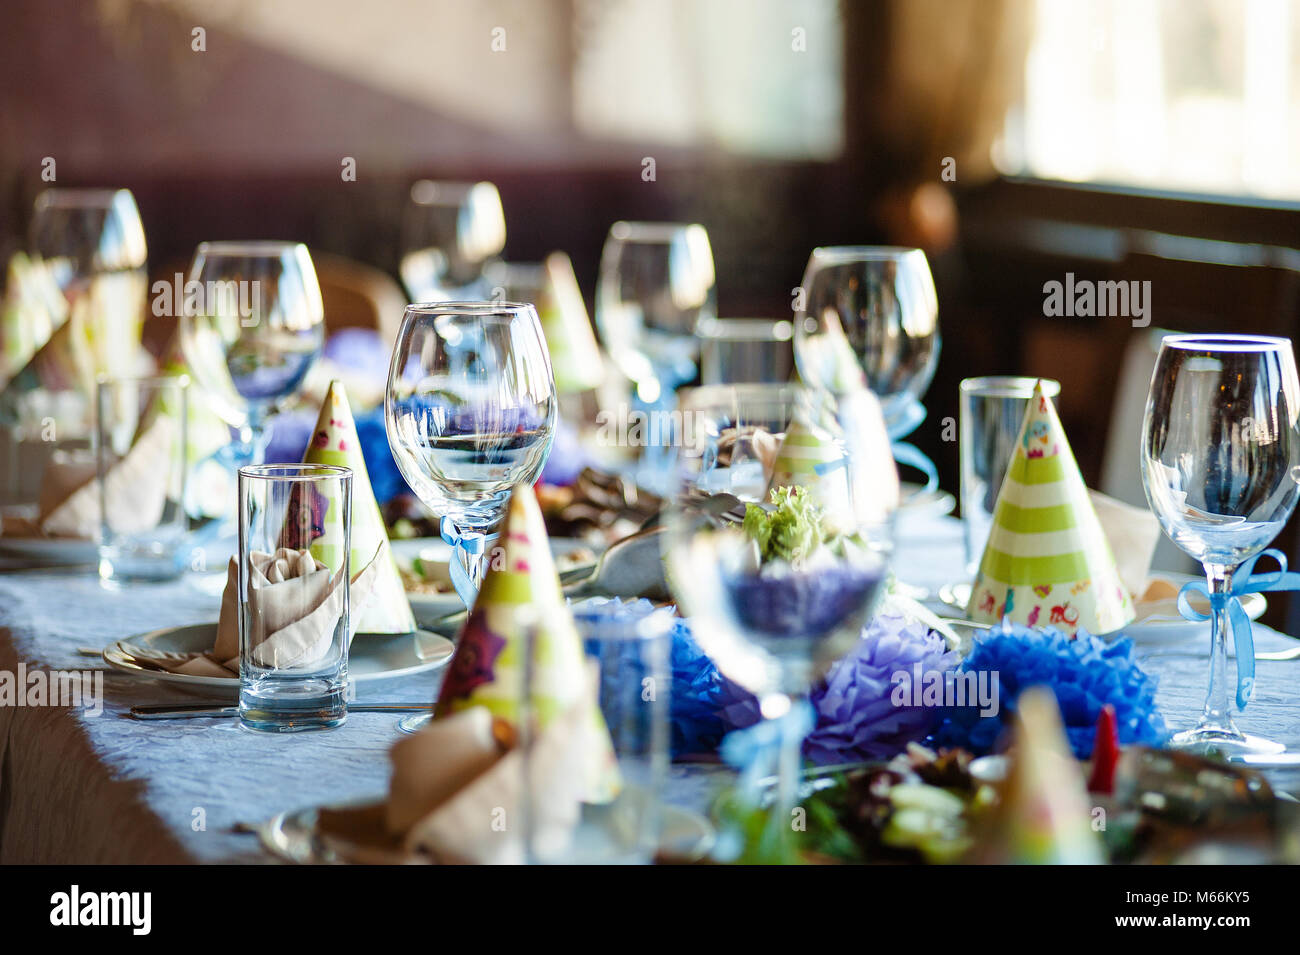 Vasos Vacíos en el restaurante set de cumpleaños. Foto de stock